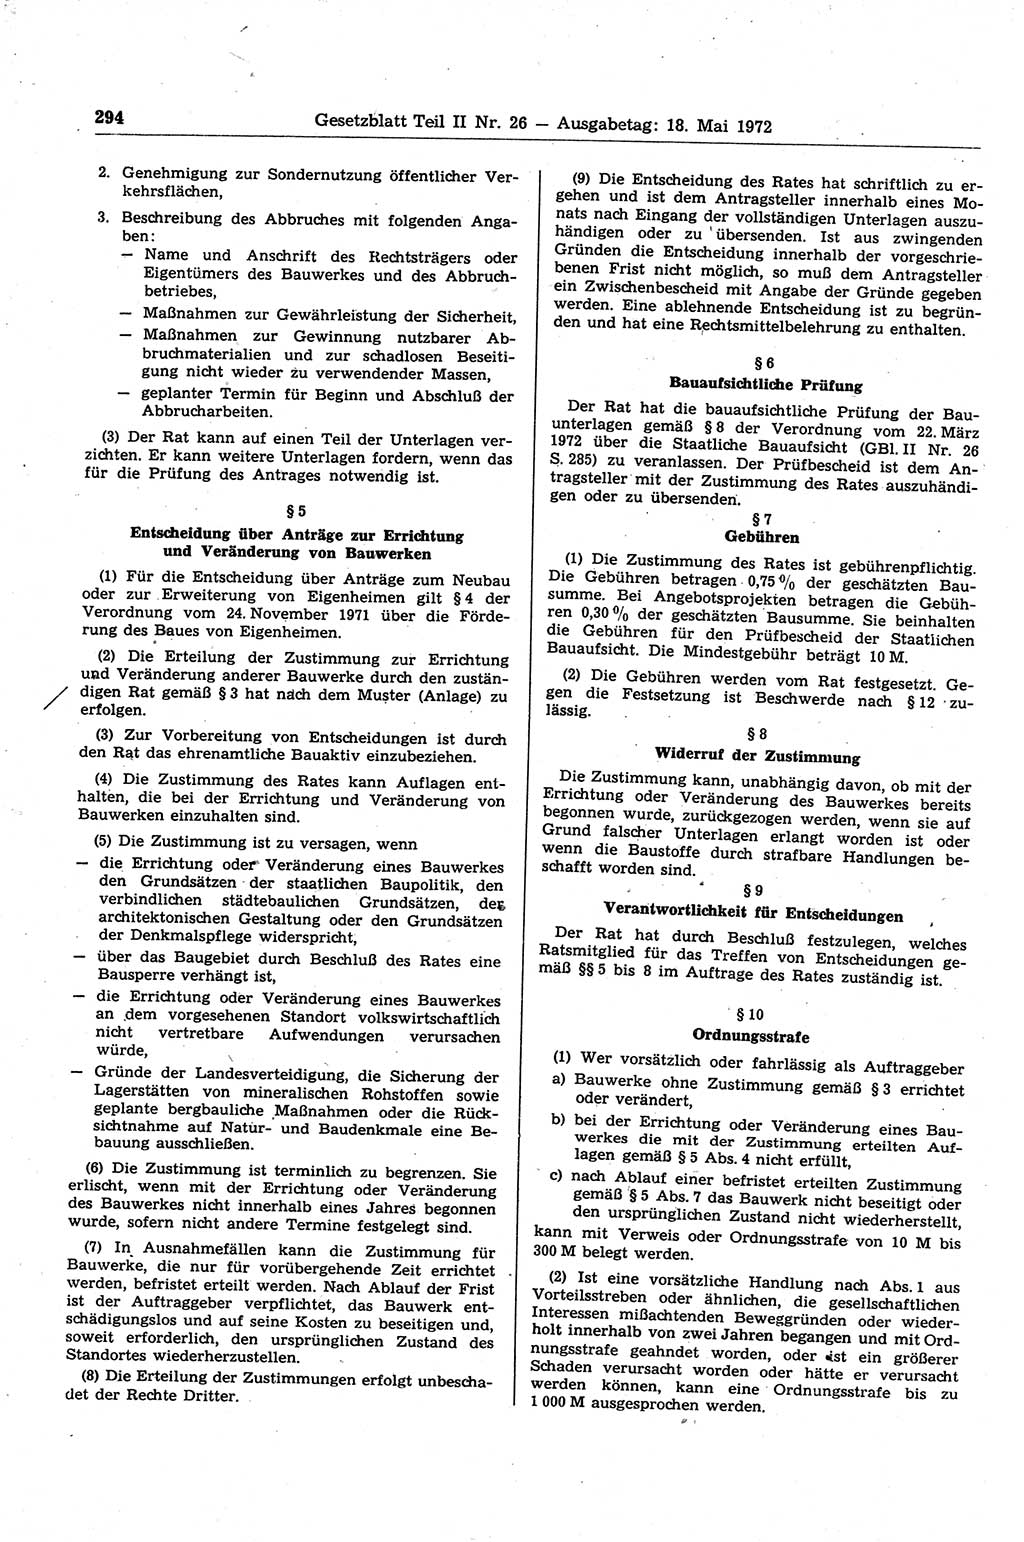 Gesetzblatt (GBl.) der Deutschen Demokratischen Republik (DDR) Teil ⅠⅠ 1972, Seite 294 (GBl. DDR ⅠⅠ 1972, S. 294)